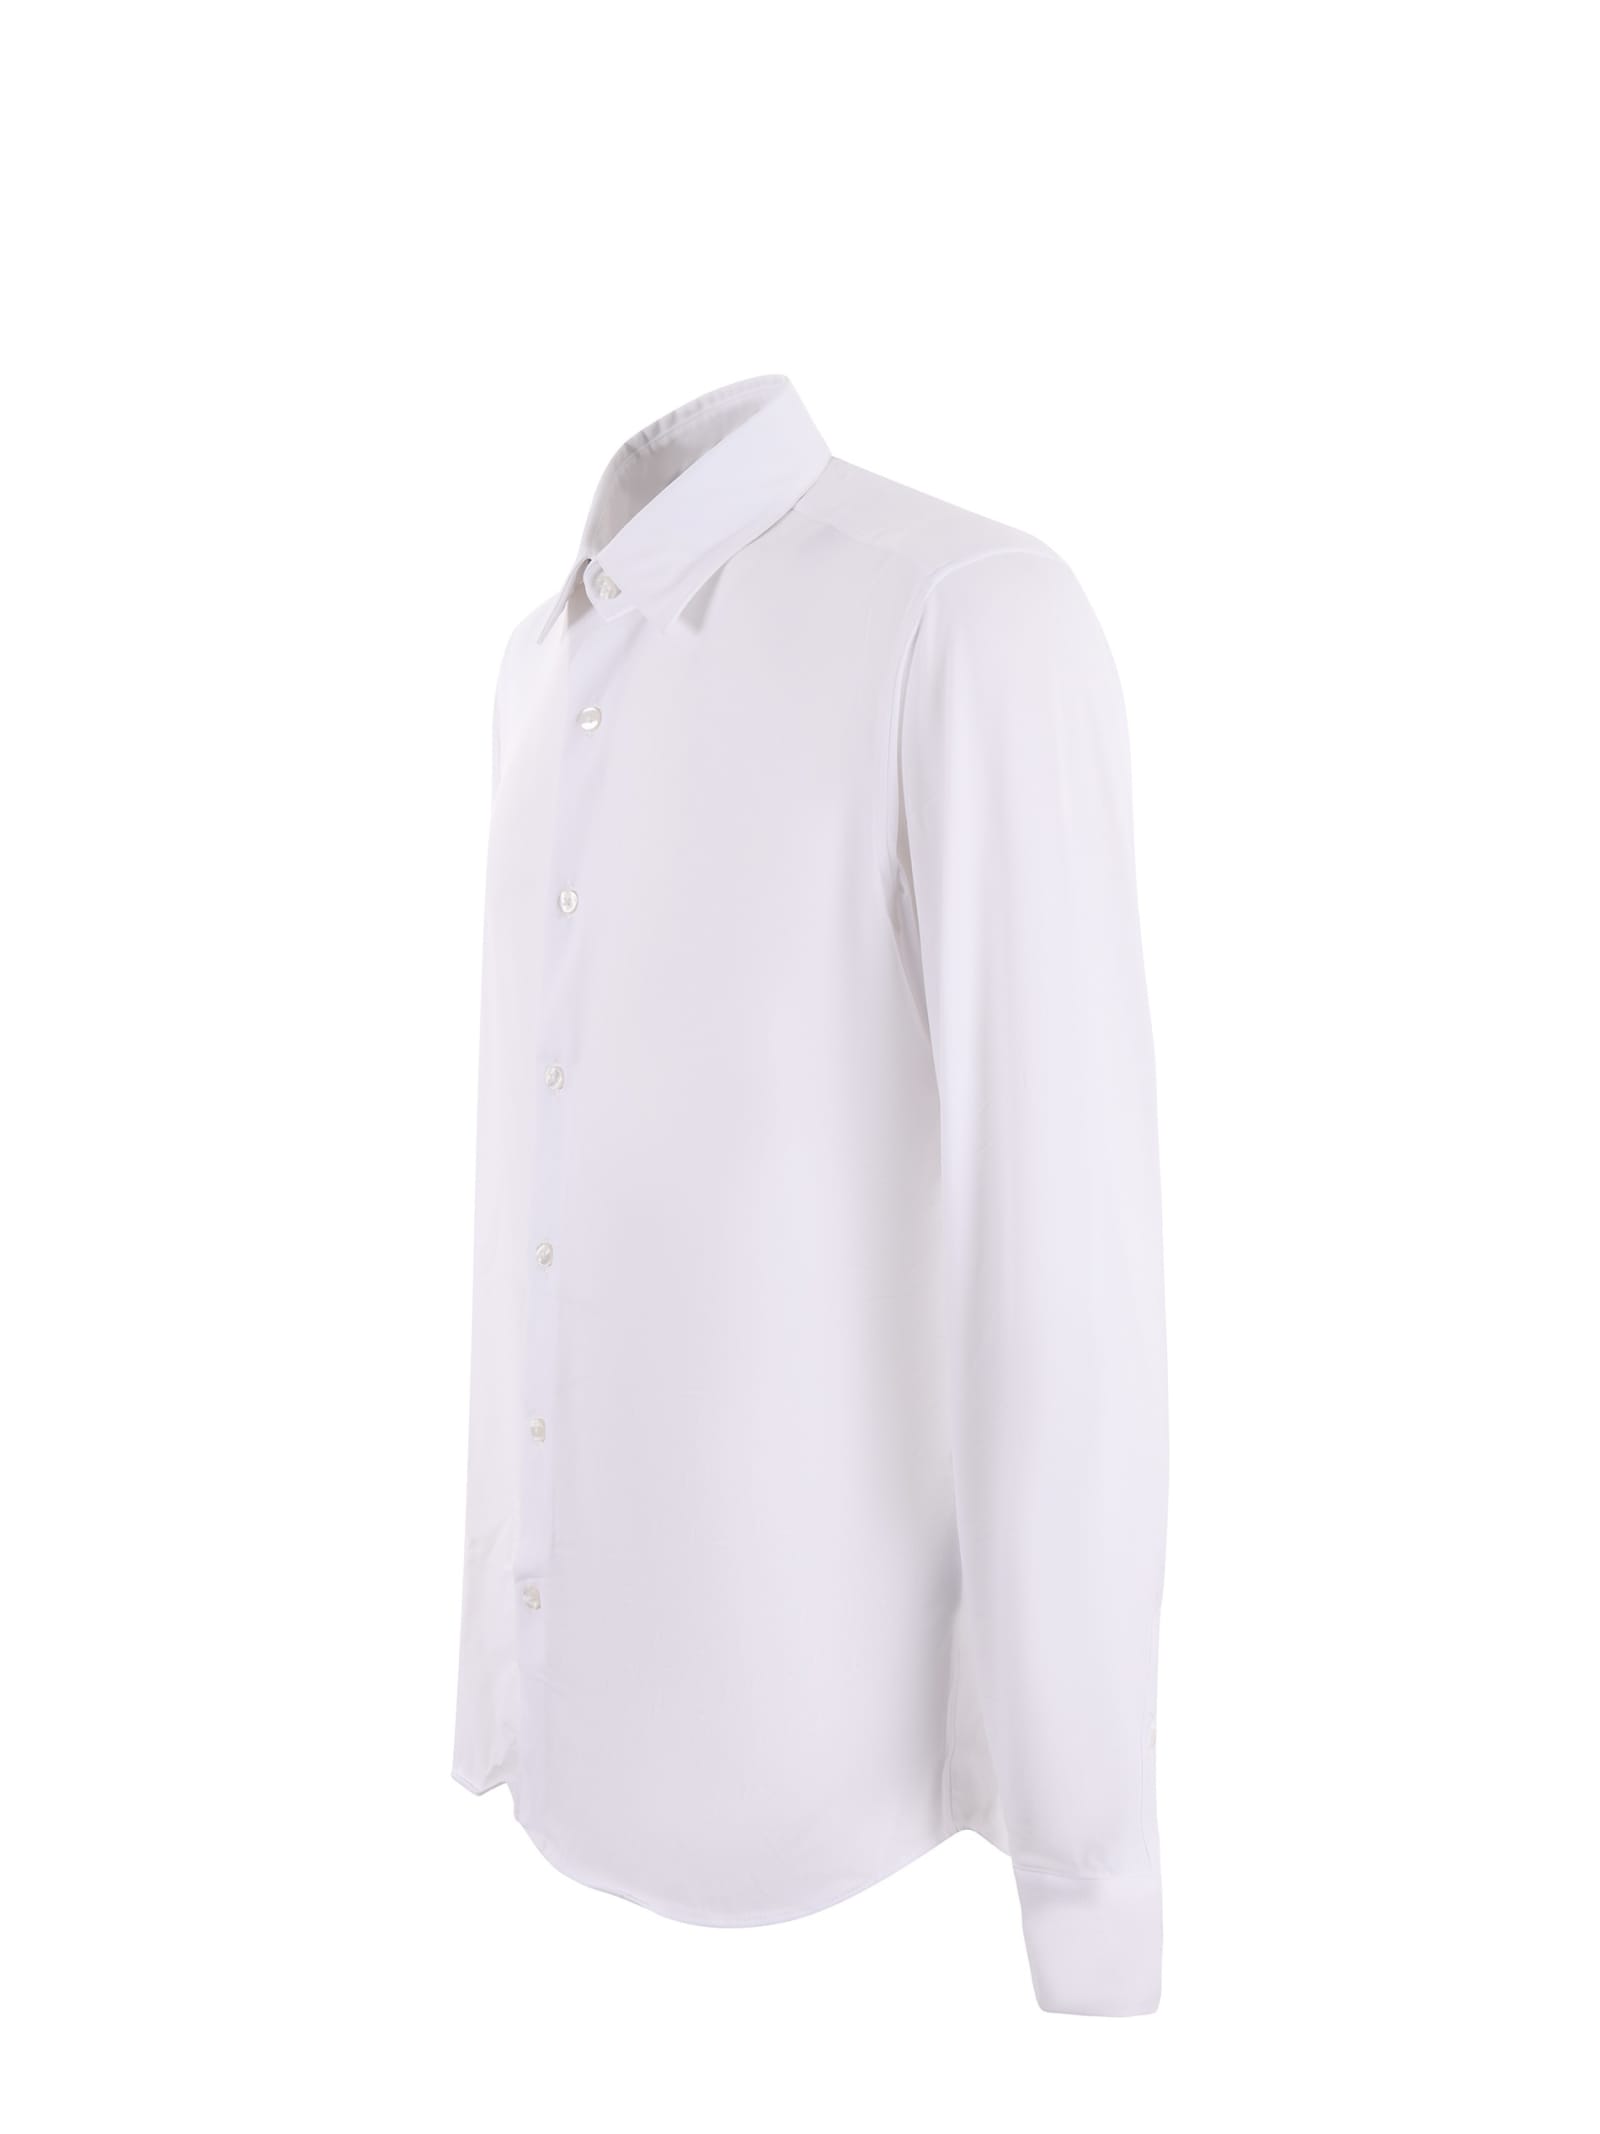 Shop Rrd - Roberto Ricci Design Camicia Rrd In Jersey Elasticizzato Disponibile Store Scafati In Bianco